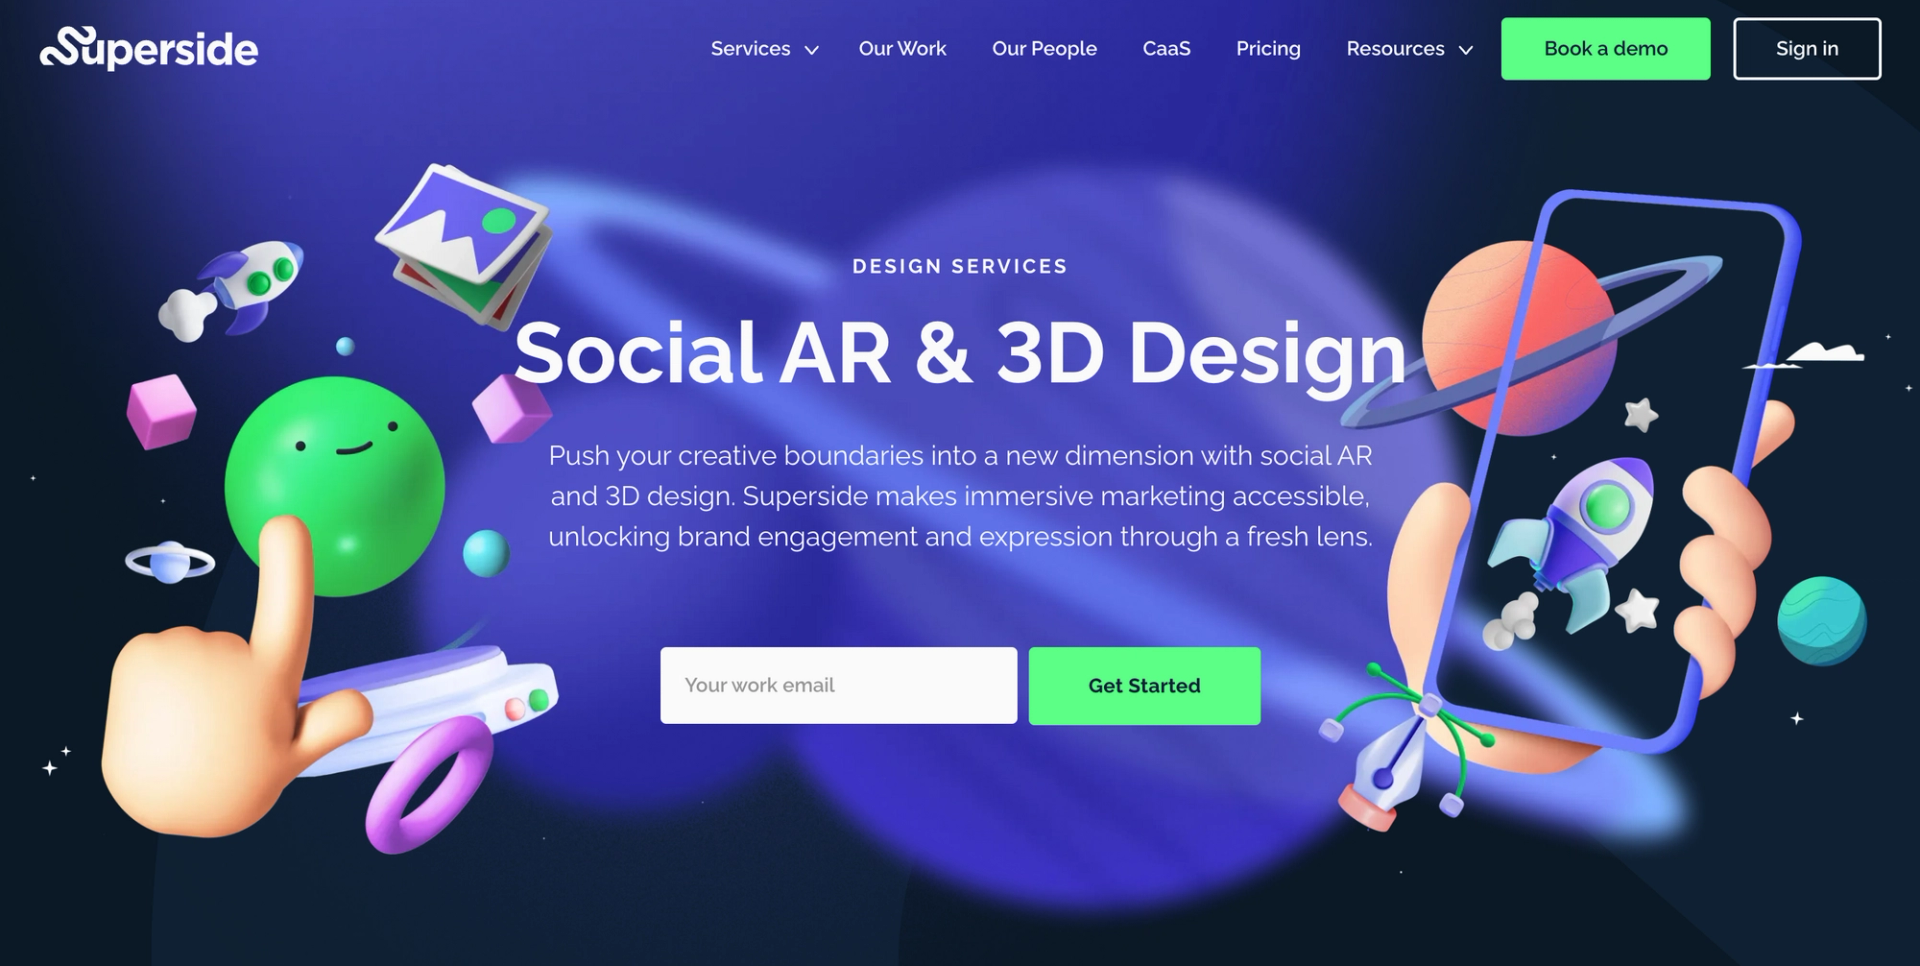 Superside Design Services: Social AR & 3D Design